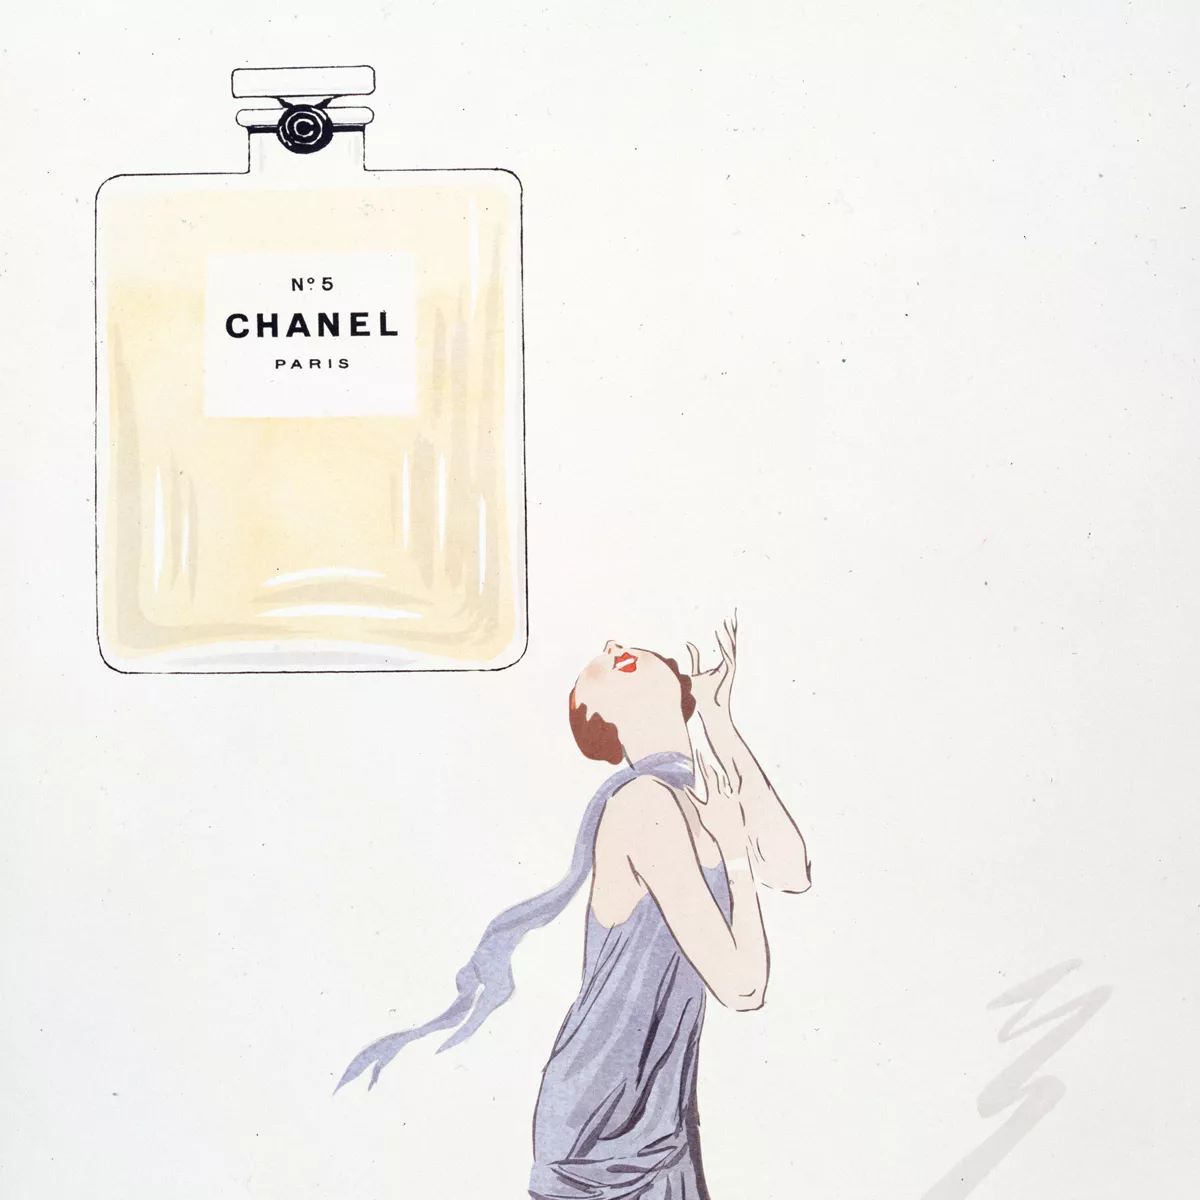 Zeichnung von Chanel No 5.